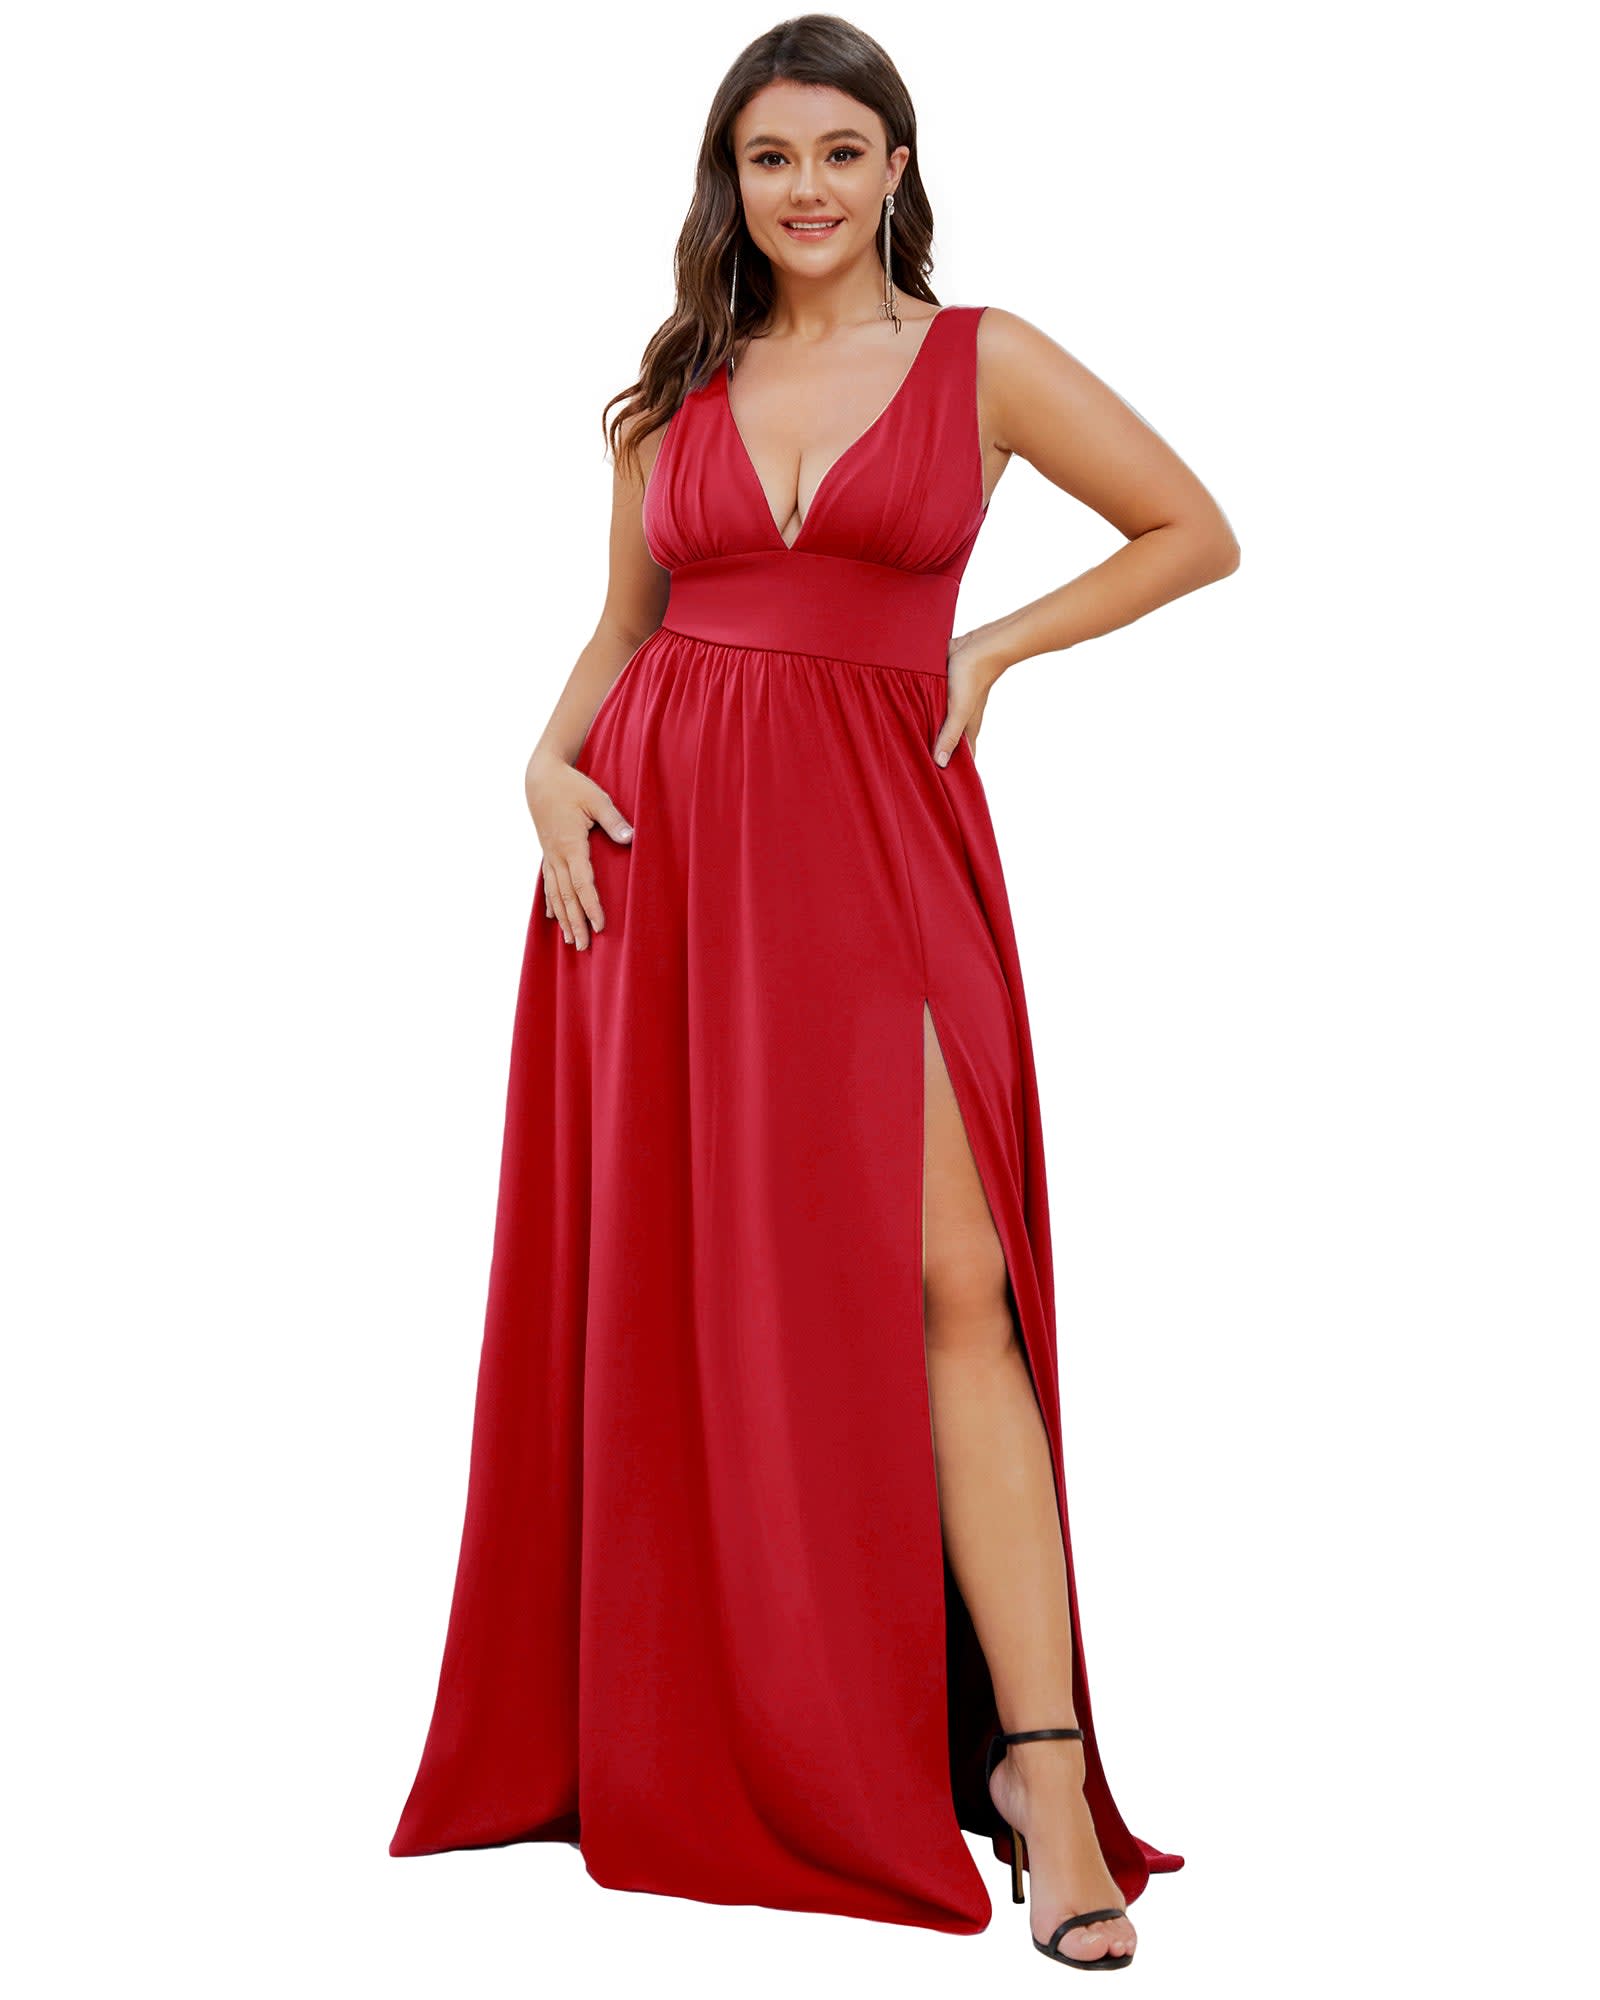 Empire Waist Red Dresses